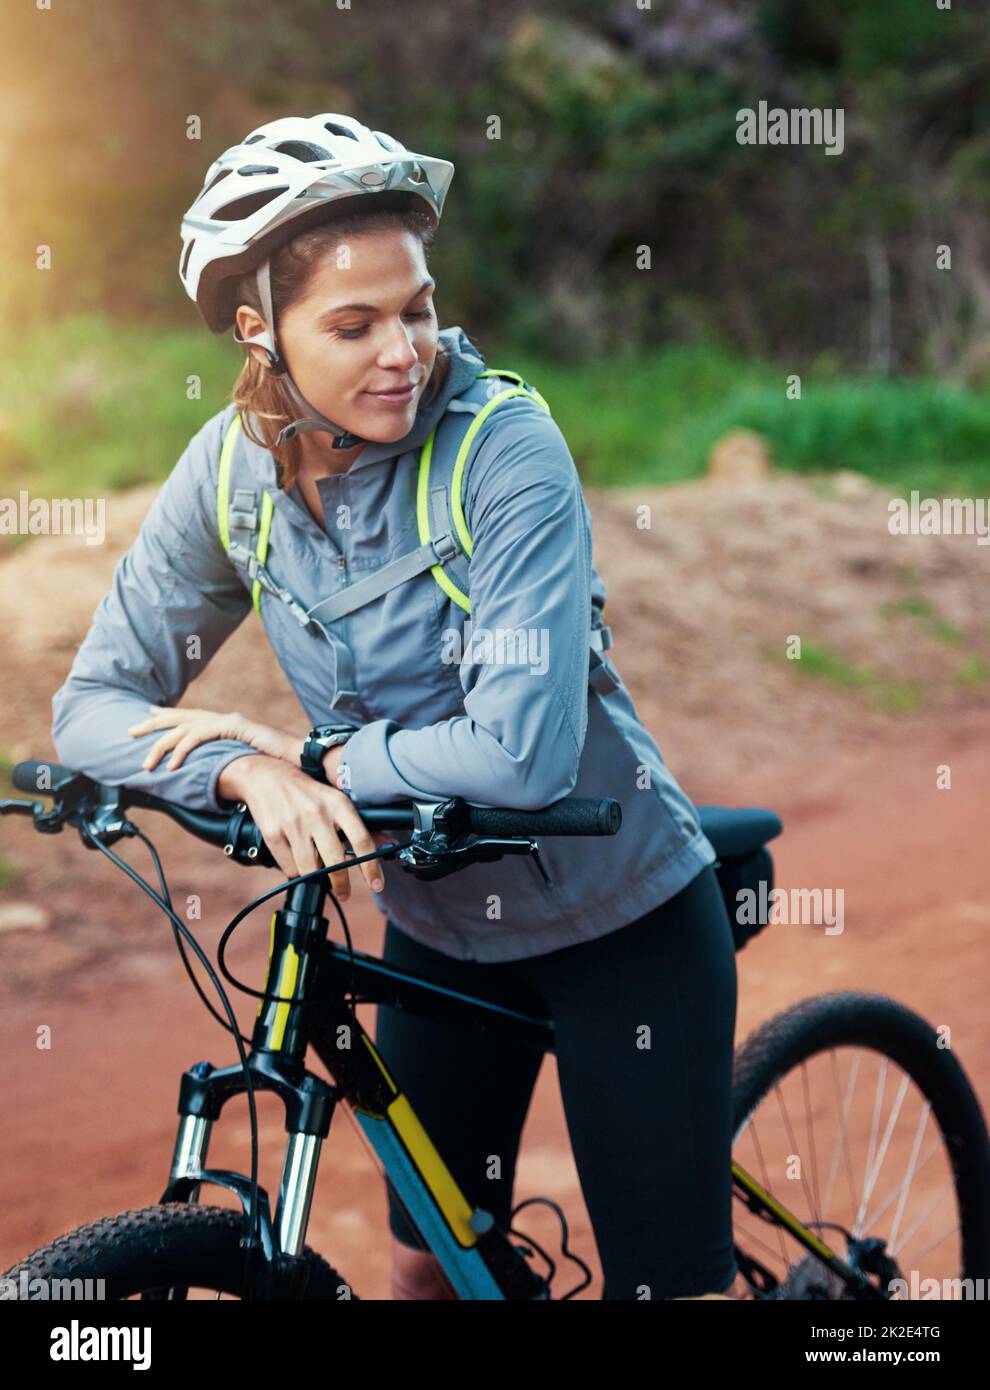 Tout ce dont elle a besoin, c'est de son vélo et d'un sentier. Photo d'une motard de montagne pour une promenade matinale. Banque D'Images